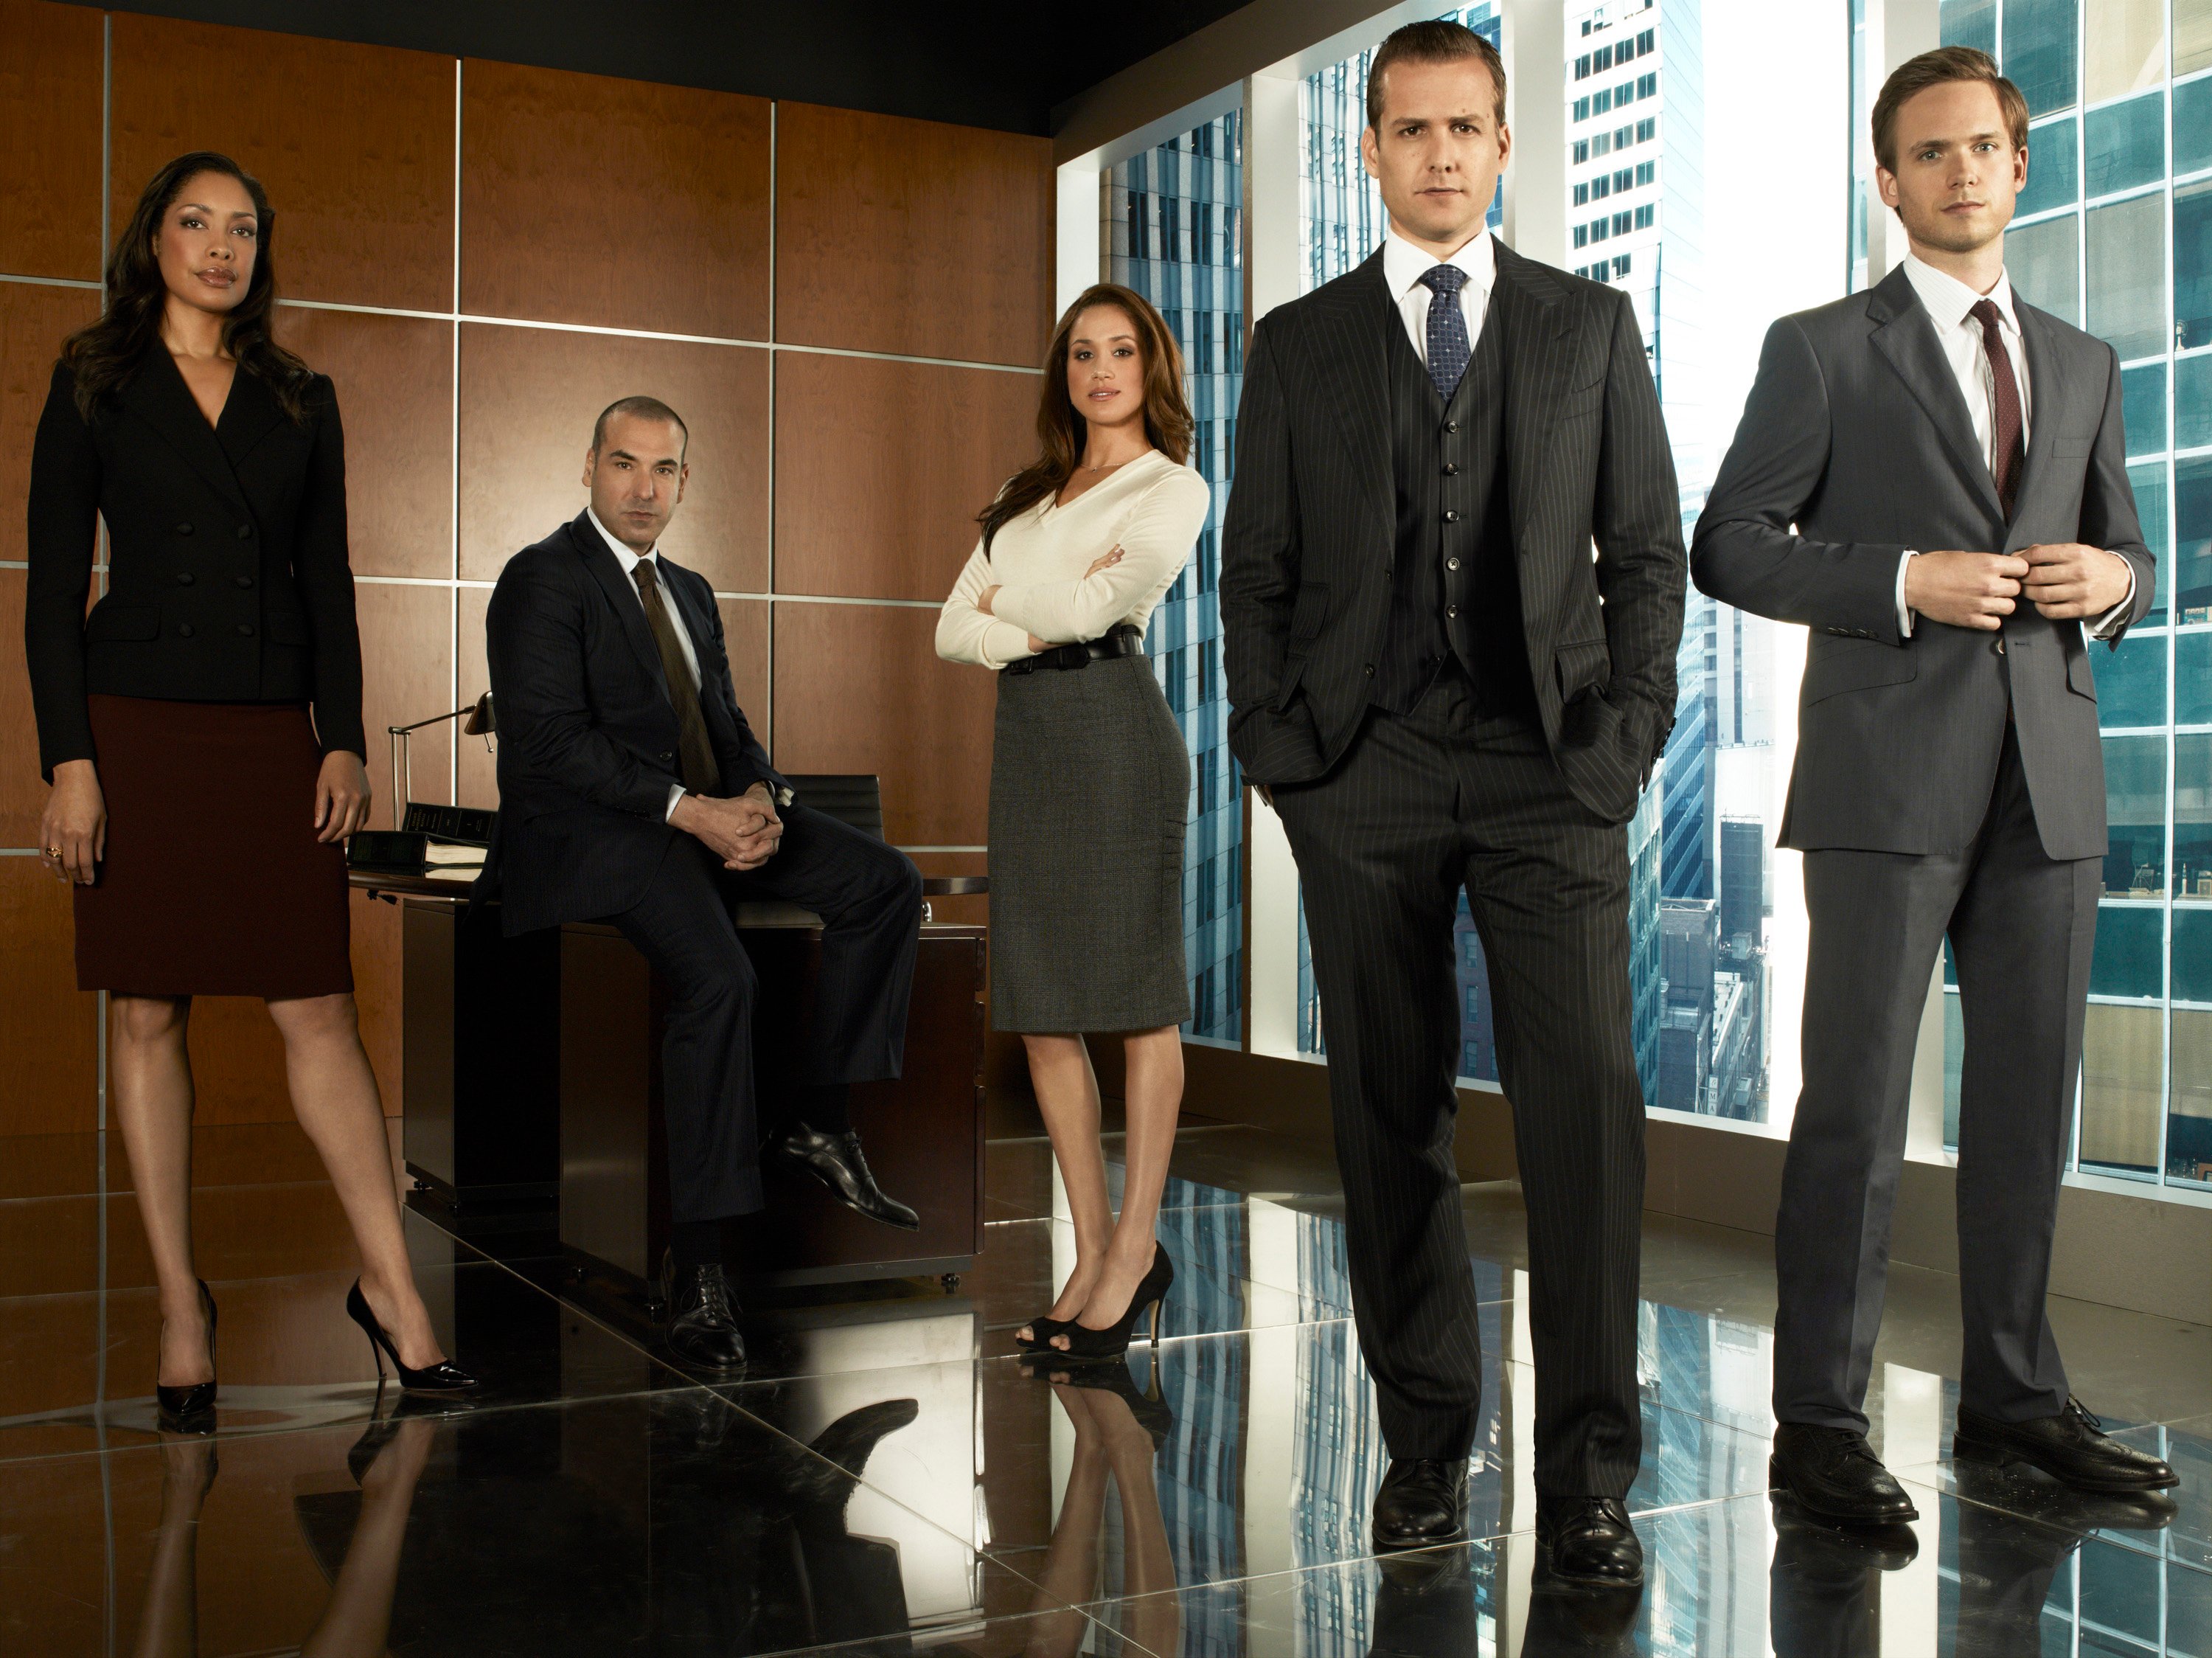 Photo of 'Suits' cast - Season 1